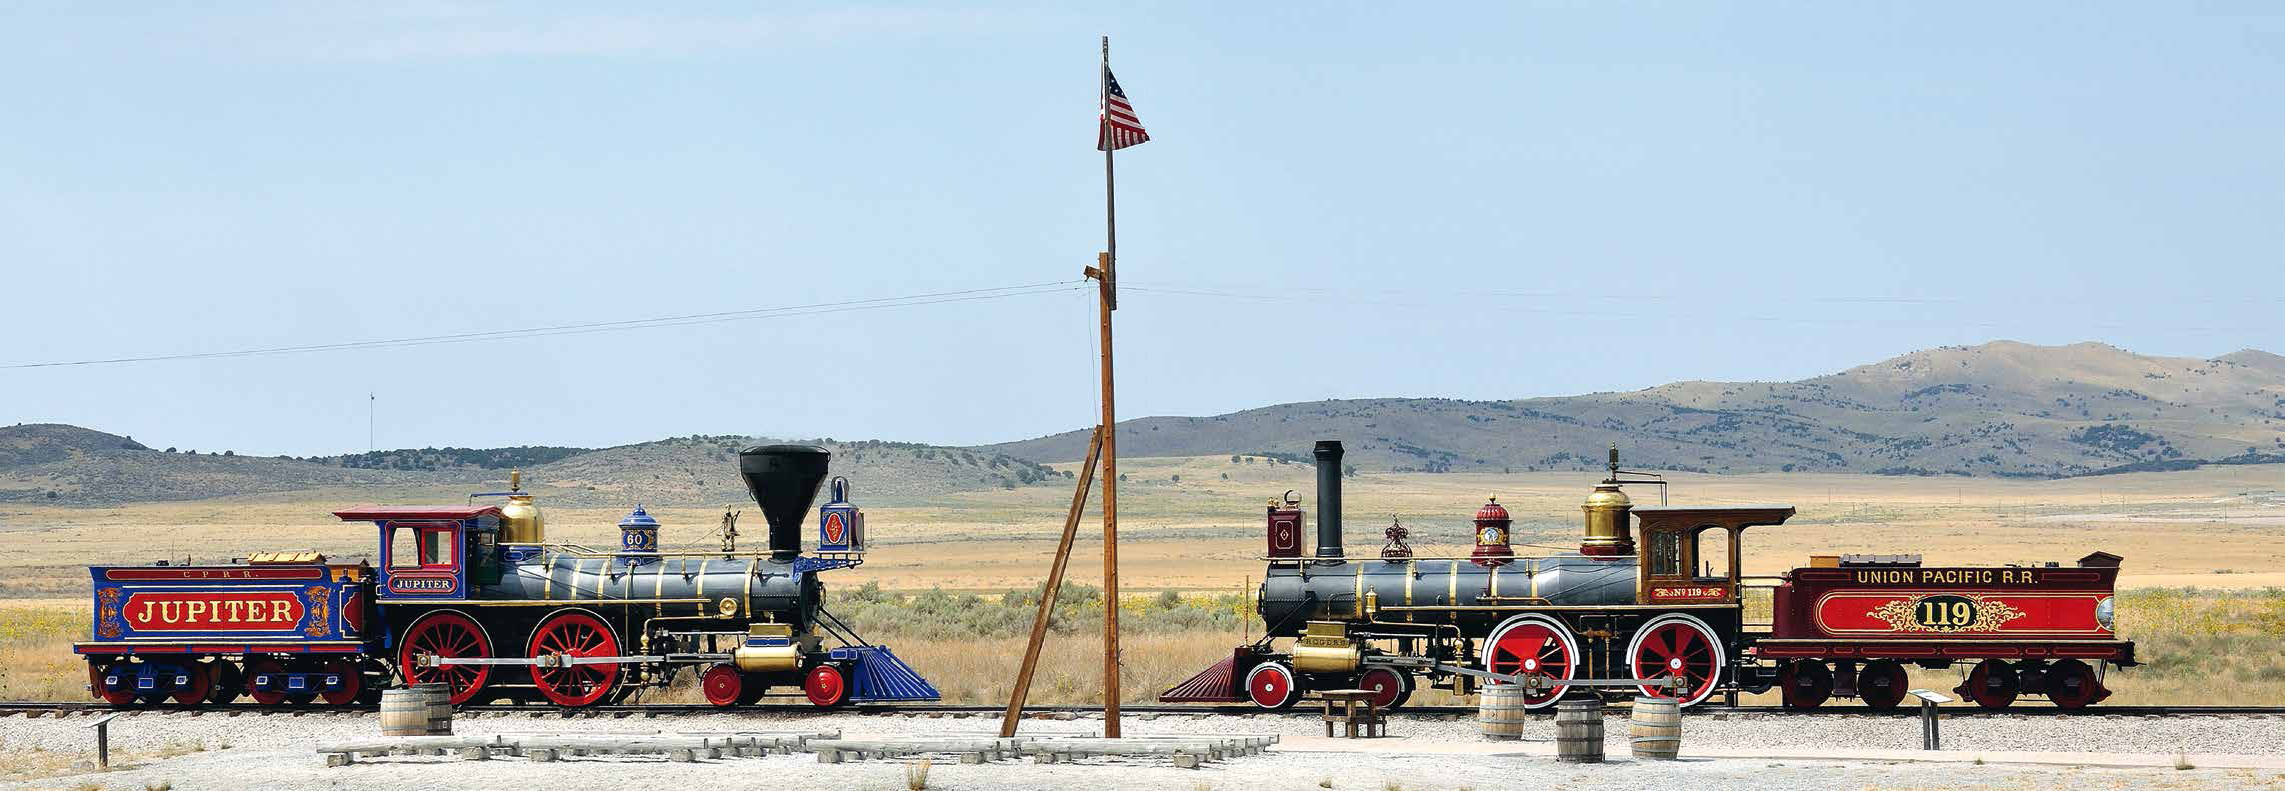 Set bestehend aus zwei Dampfloks, wie sie bei der Erffnung der ersten transkontinentalen Eisenbahn in den USA dabei waren. Ausfhrung, Farbgebung und Beschriftung entsprechend den beiden Nachbauten - Lok "119" der Union Pacific RR und Lok "Jupiter" der Central Pacific RR, wie sie heute noch in der Gedenksttte am Promontory Summit in Utah im Einsatz sind.